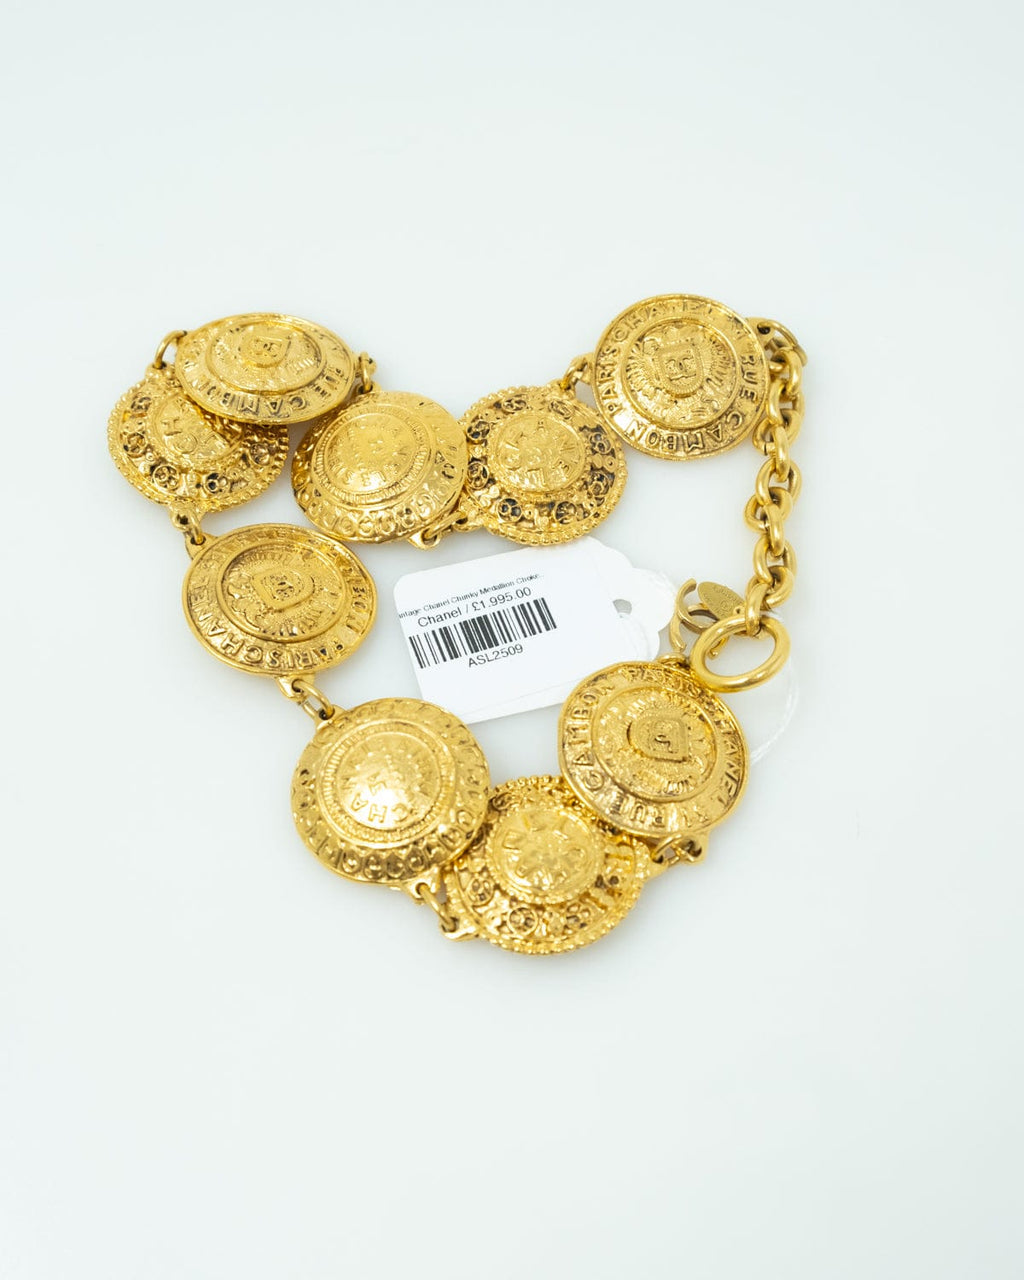 Chanel 1980s Logo Medallion Charm Necklace and Bracelet Set – Vintage by  Misty